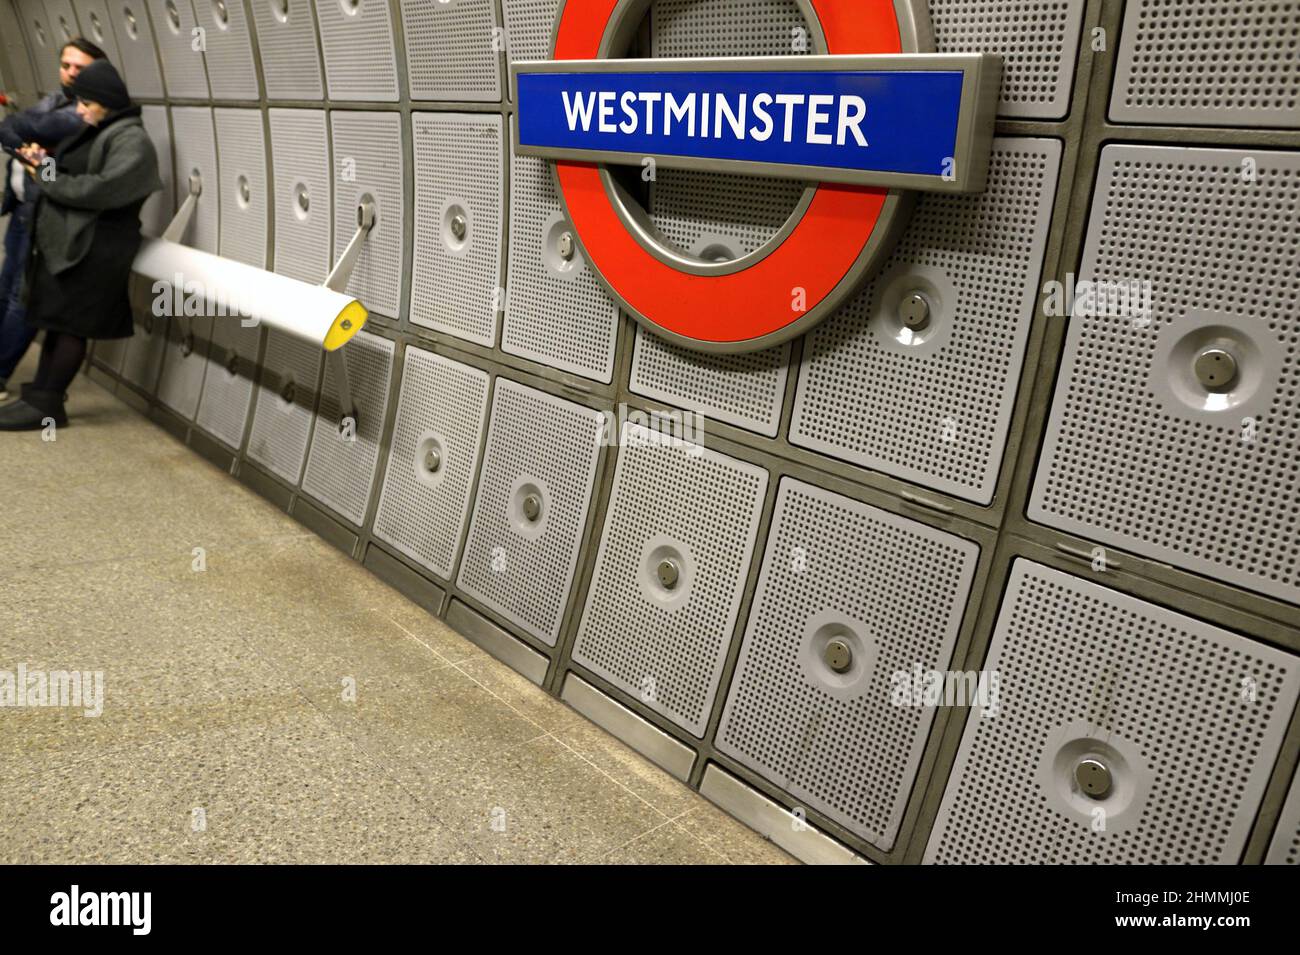 London, England, UK. London Underground: Westminster station platform Stock Photo